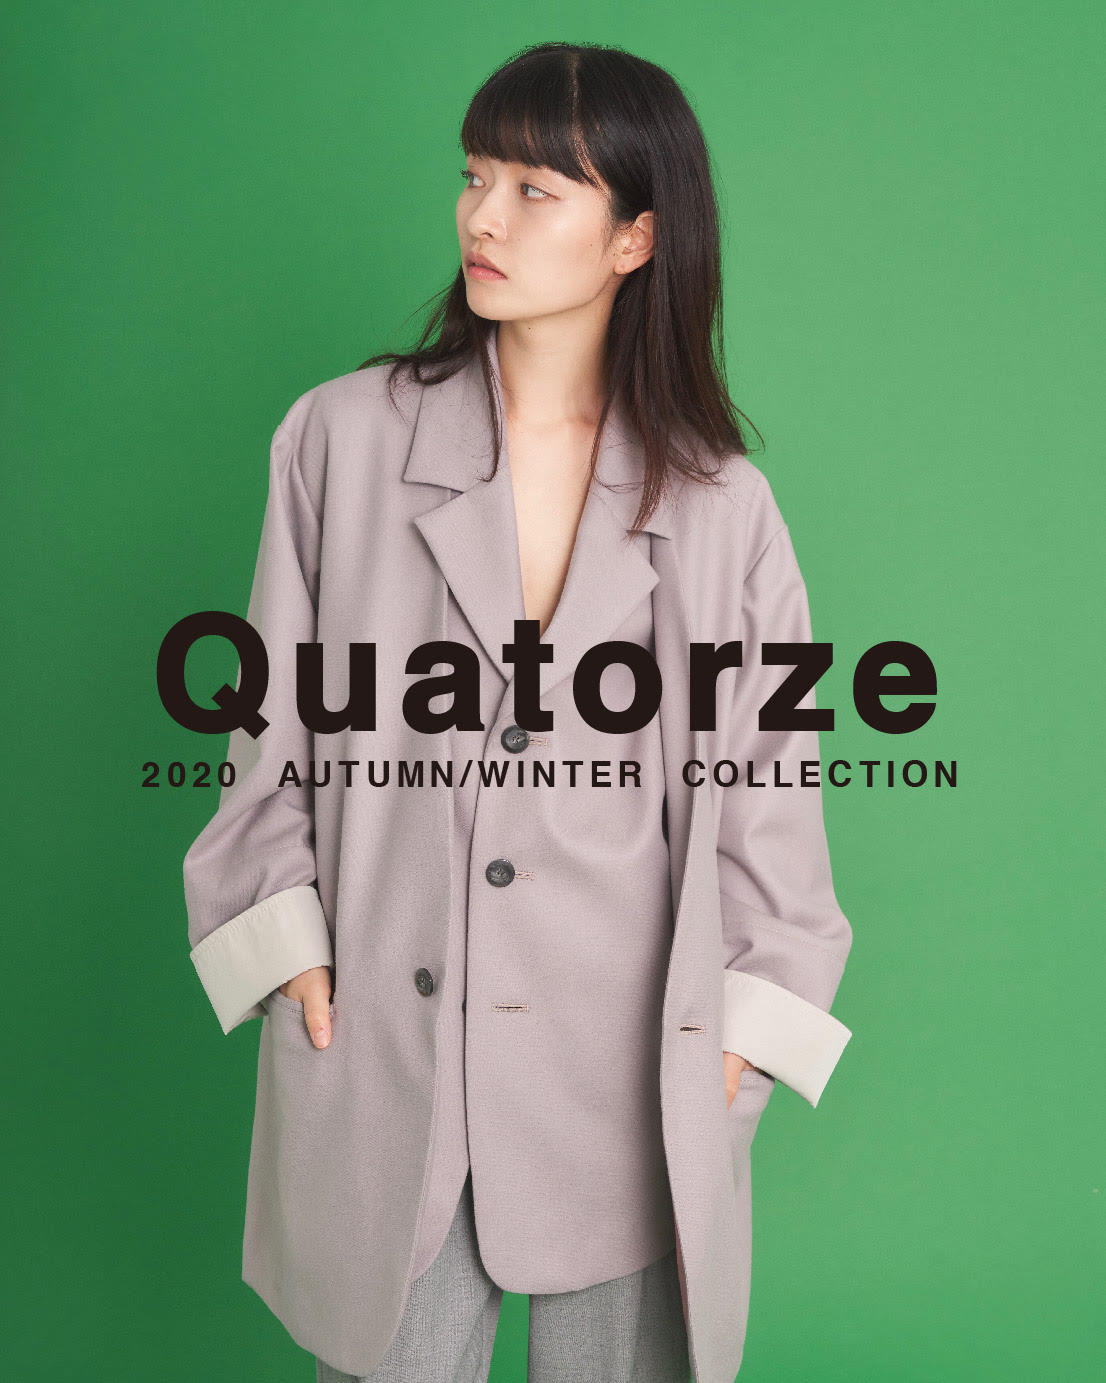 【recommend】"Quatorze" 2020-21 A/W collection item